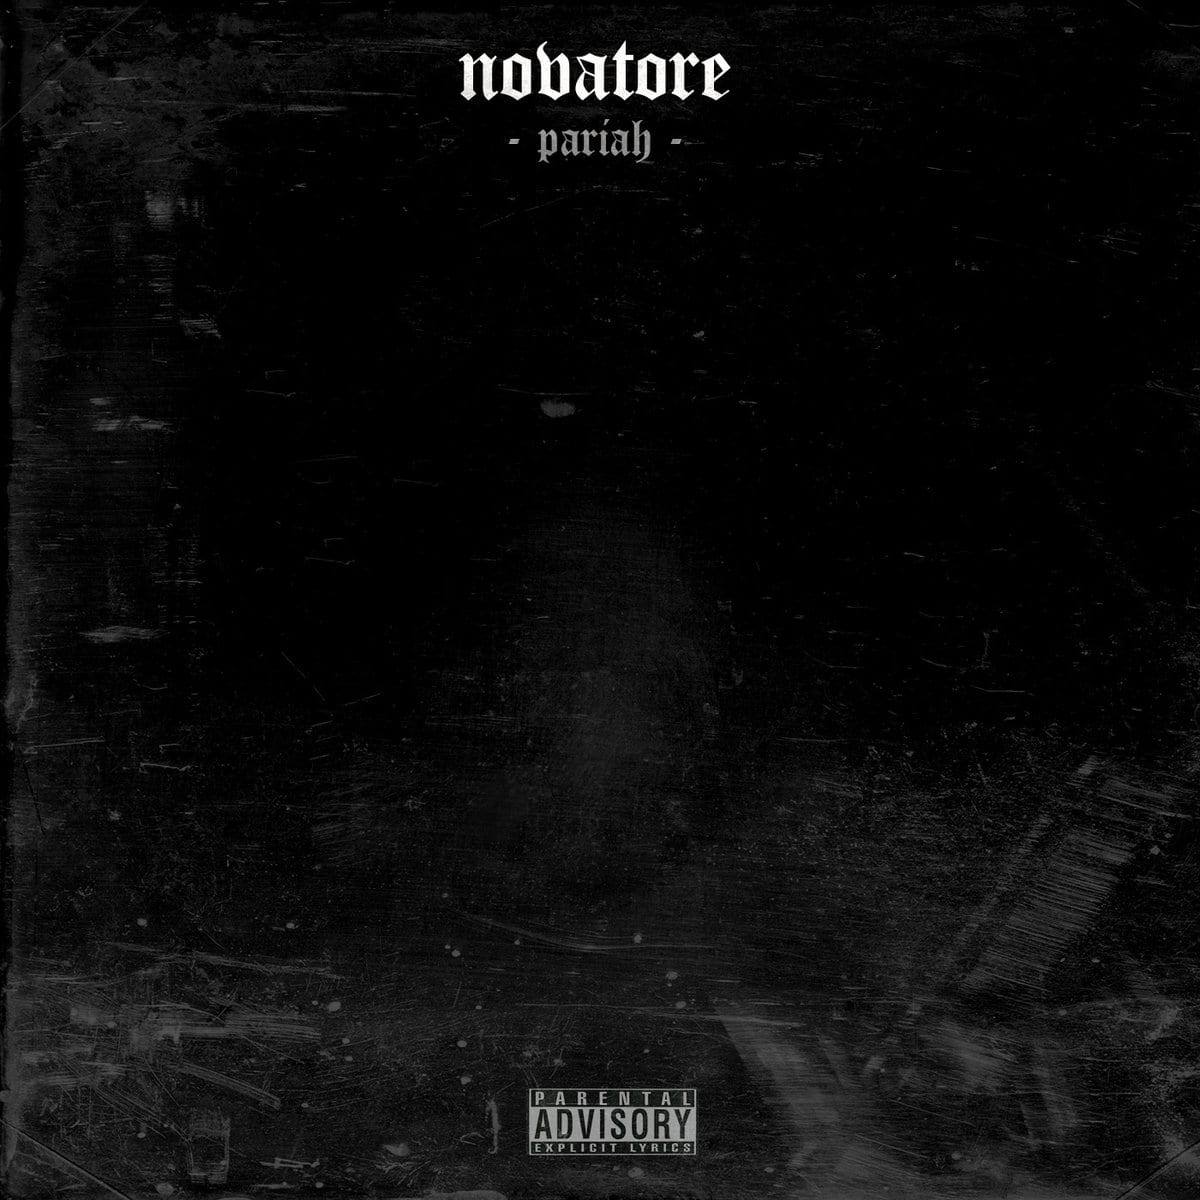 Novatore - “PARIAH” (Album Review)